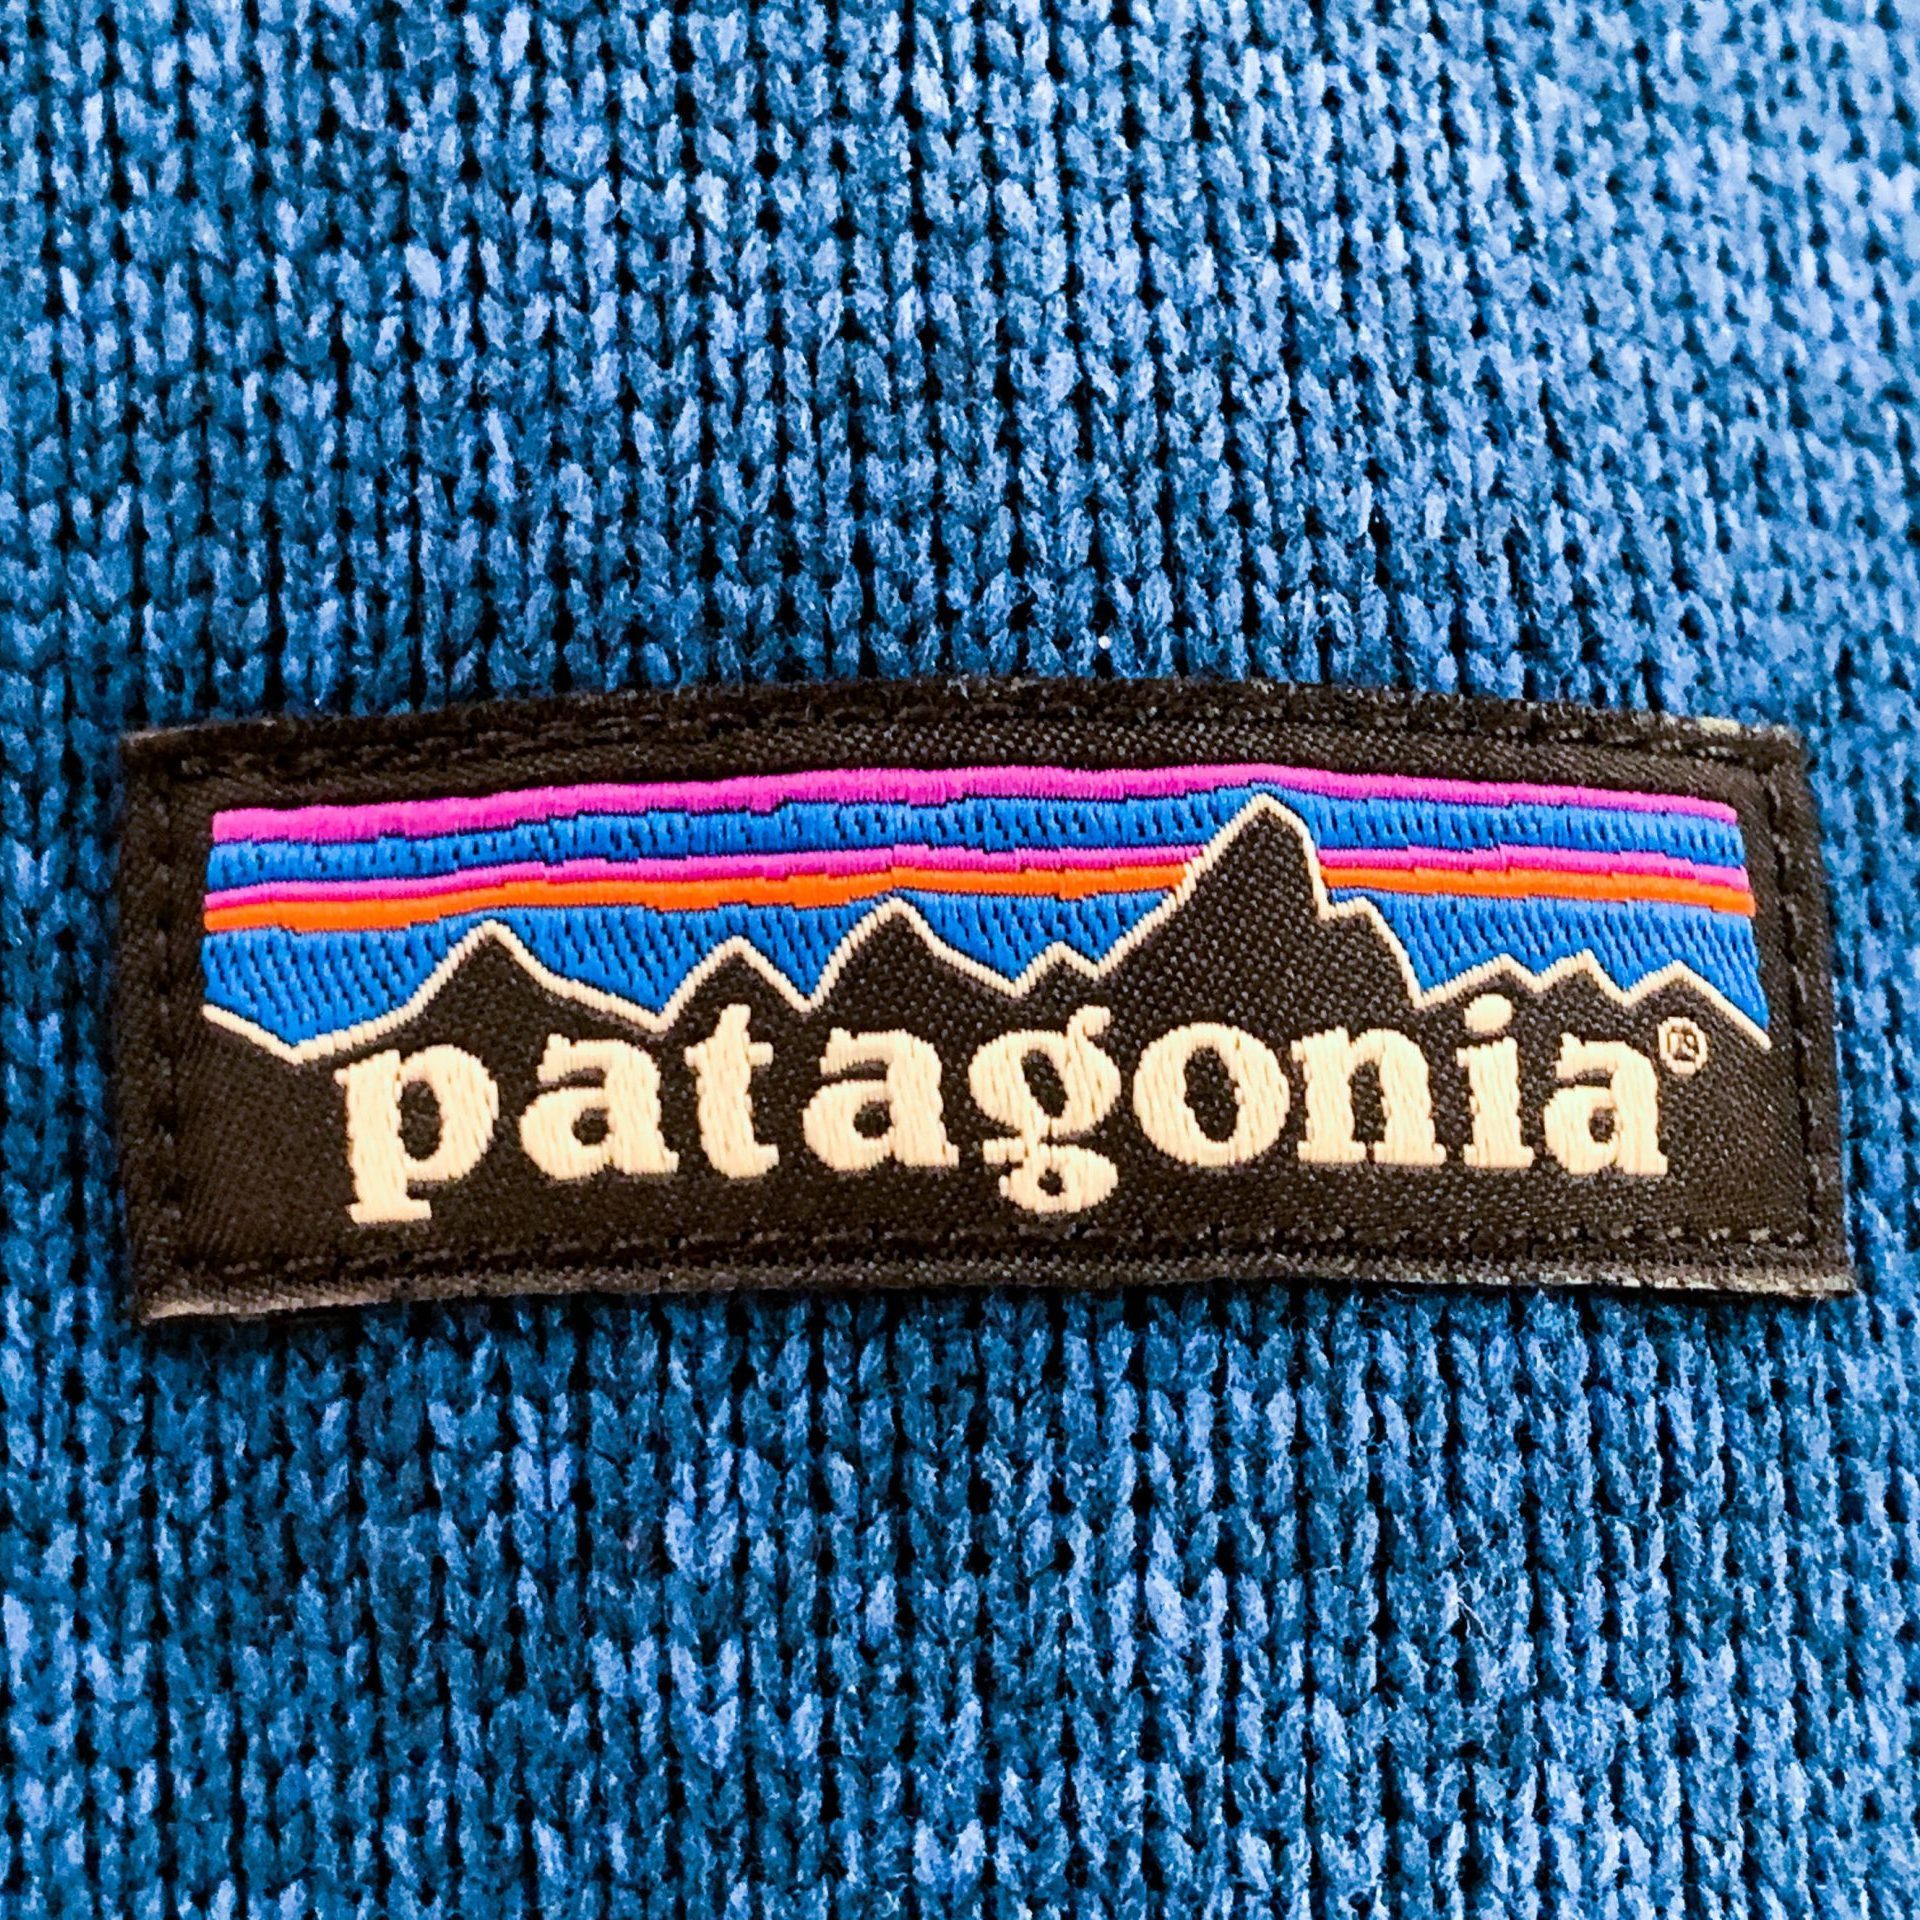 Patagonia logo on sweater